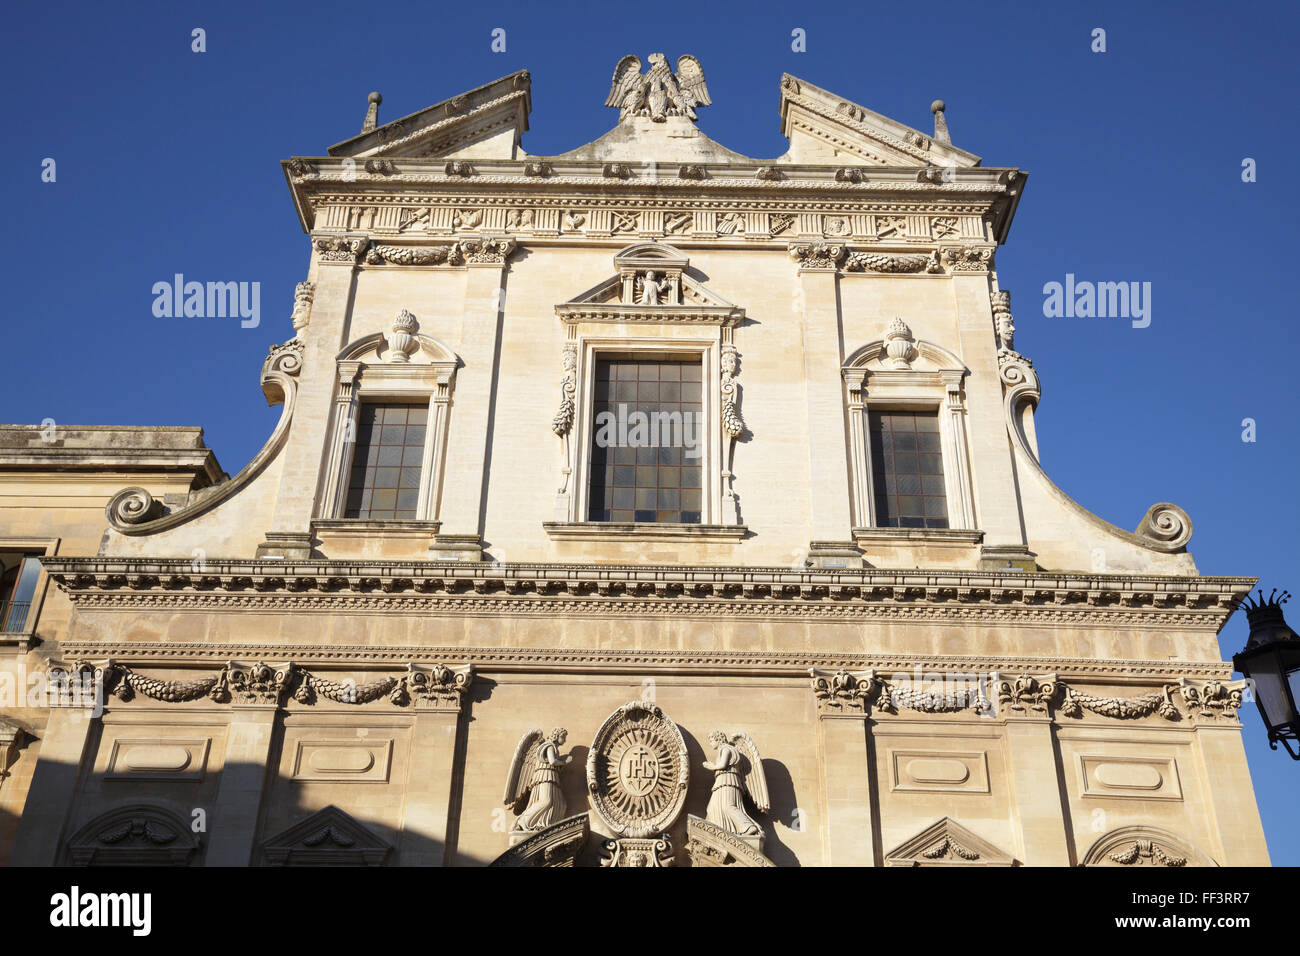 La chiesa del Gesù o della Madonna del Buon Consiglio Église catholique, Lecce, Pouilles, Italie Banque D'Images